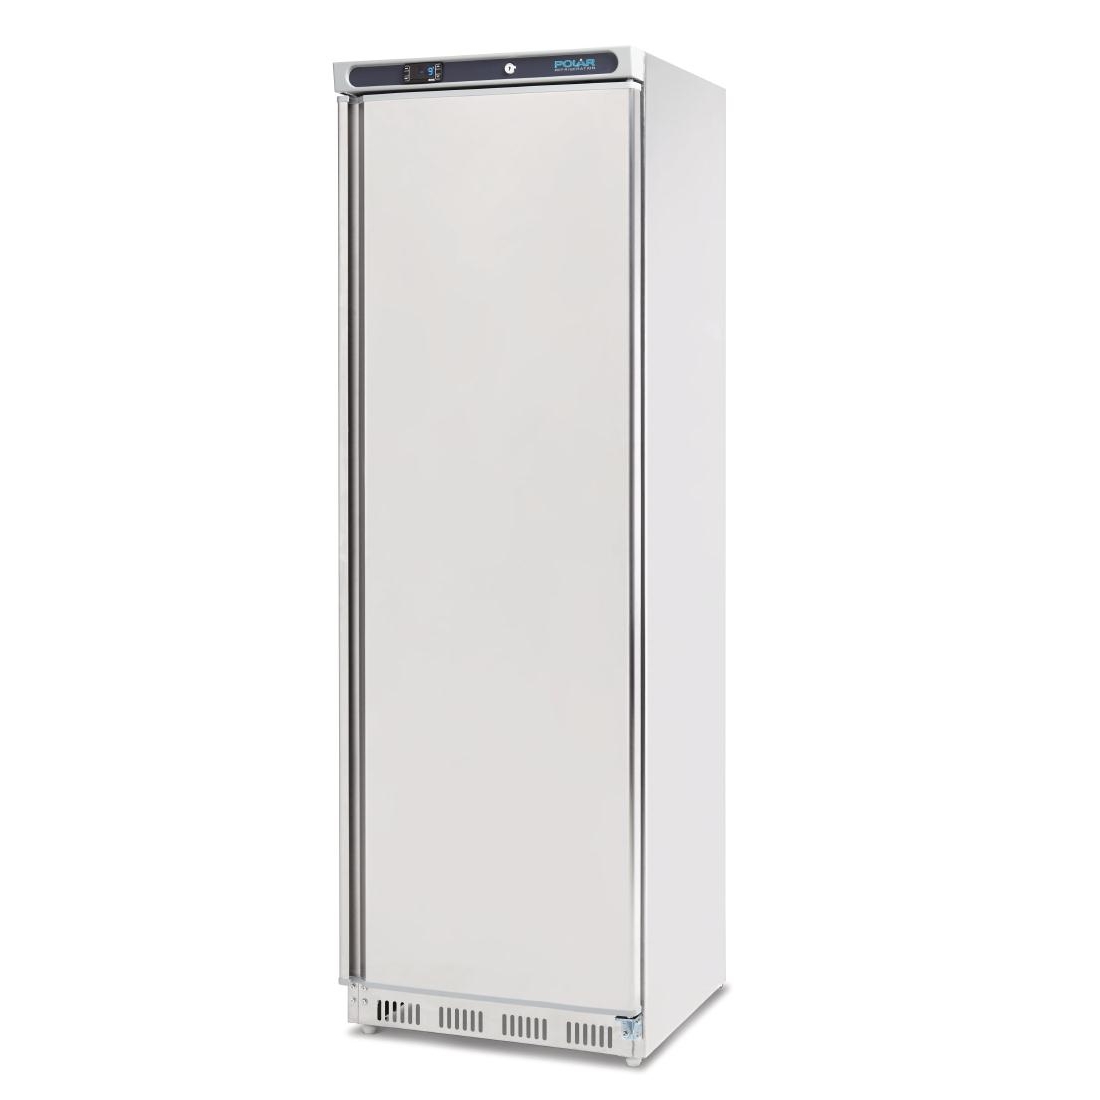 Polar Single Door Freezer 365 Ltr